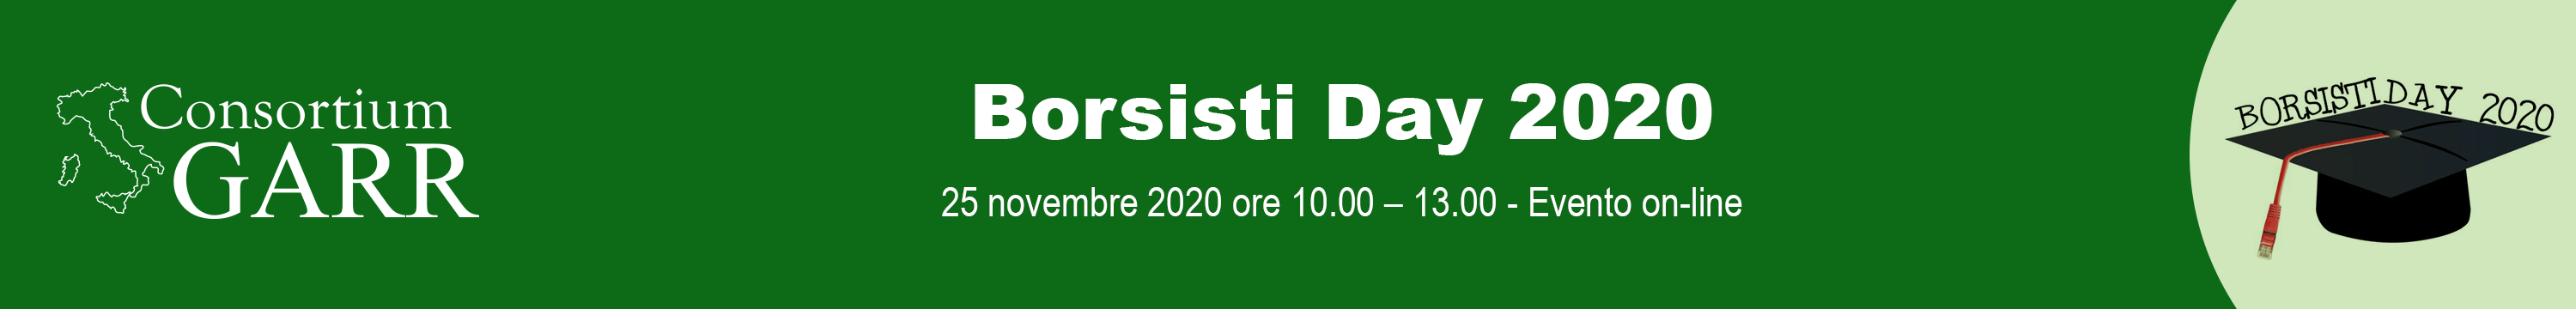 Borsisti day 2020